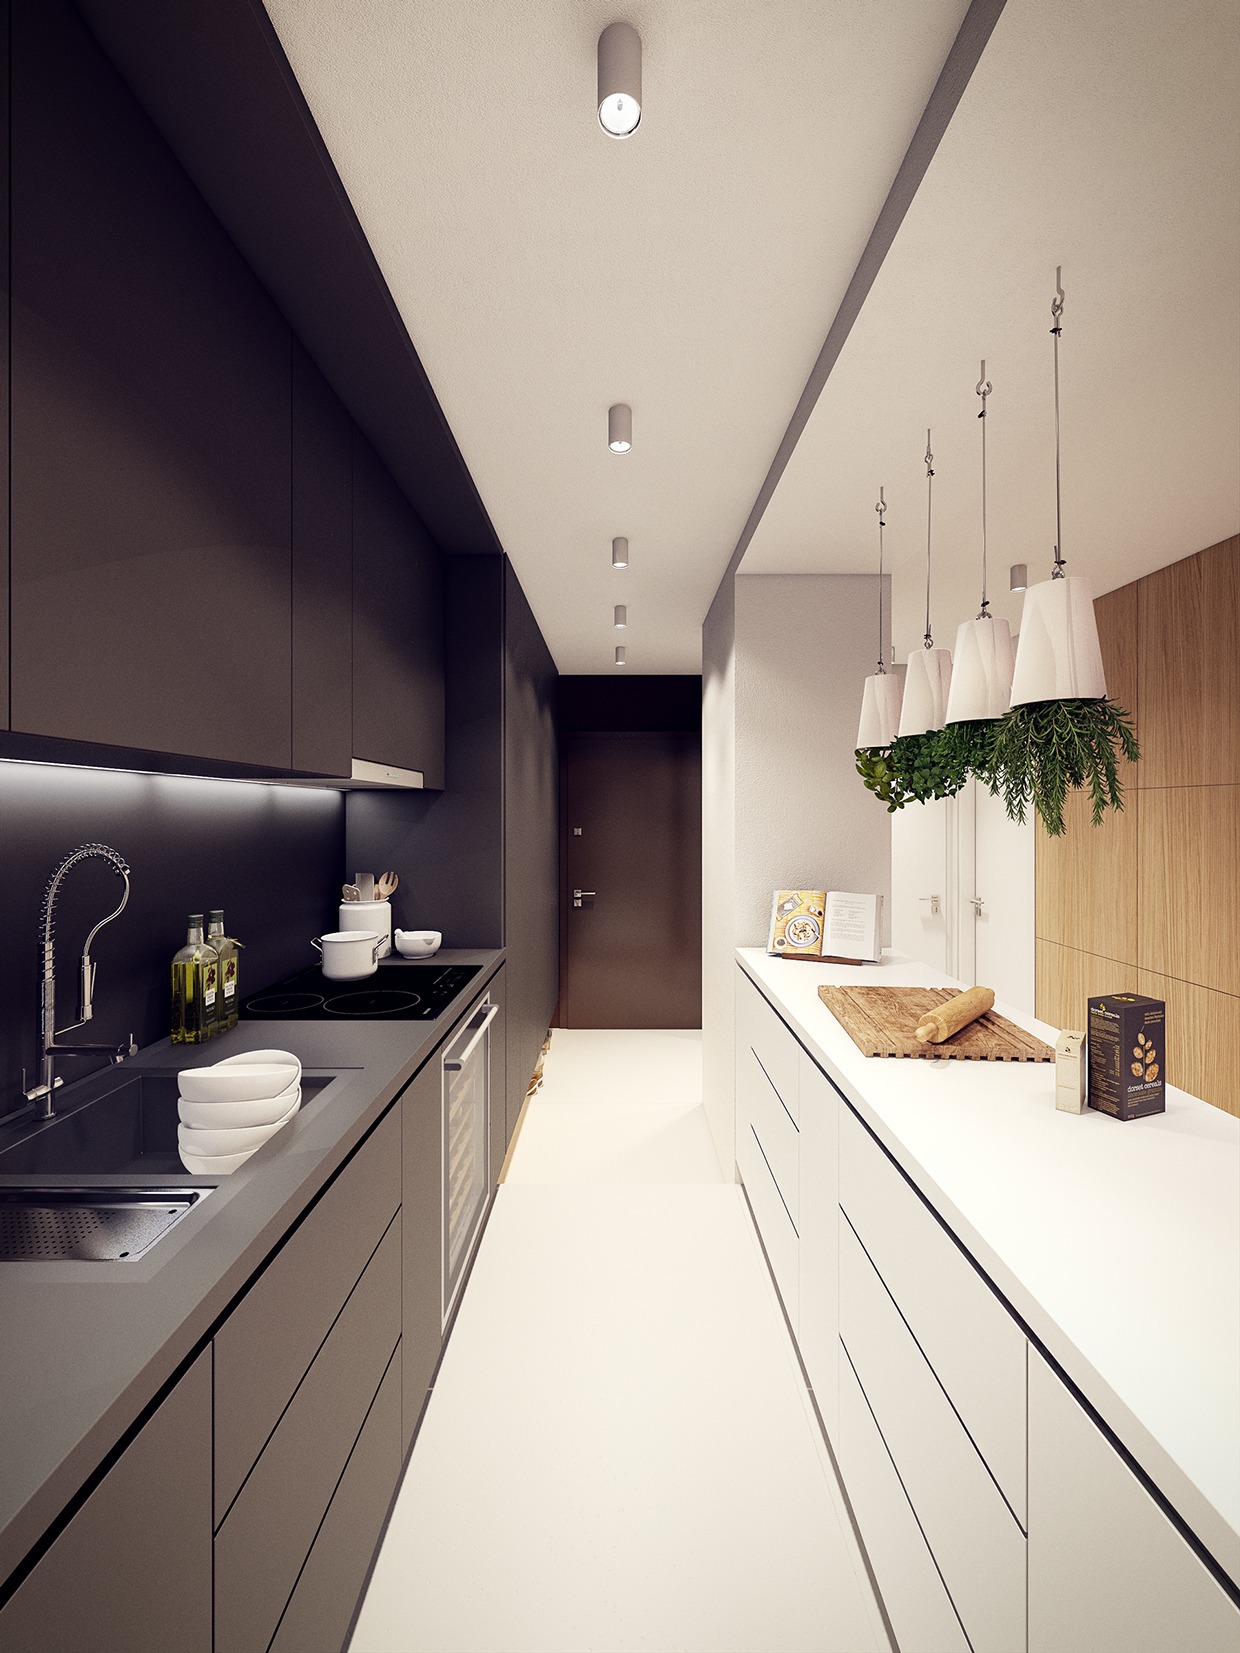 Wedo thiết kế nội thất nhà bếp đẹp lấy cảm hứng từ xu hướng thiết kế từ những năm 60